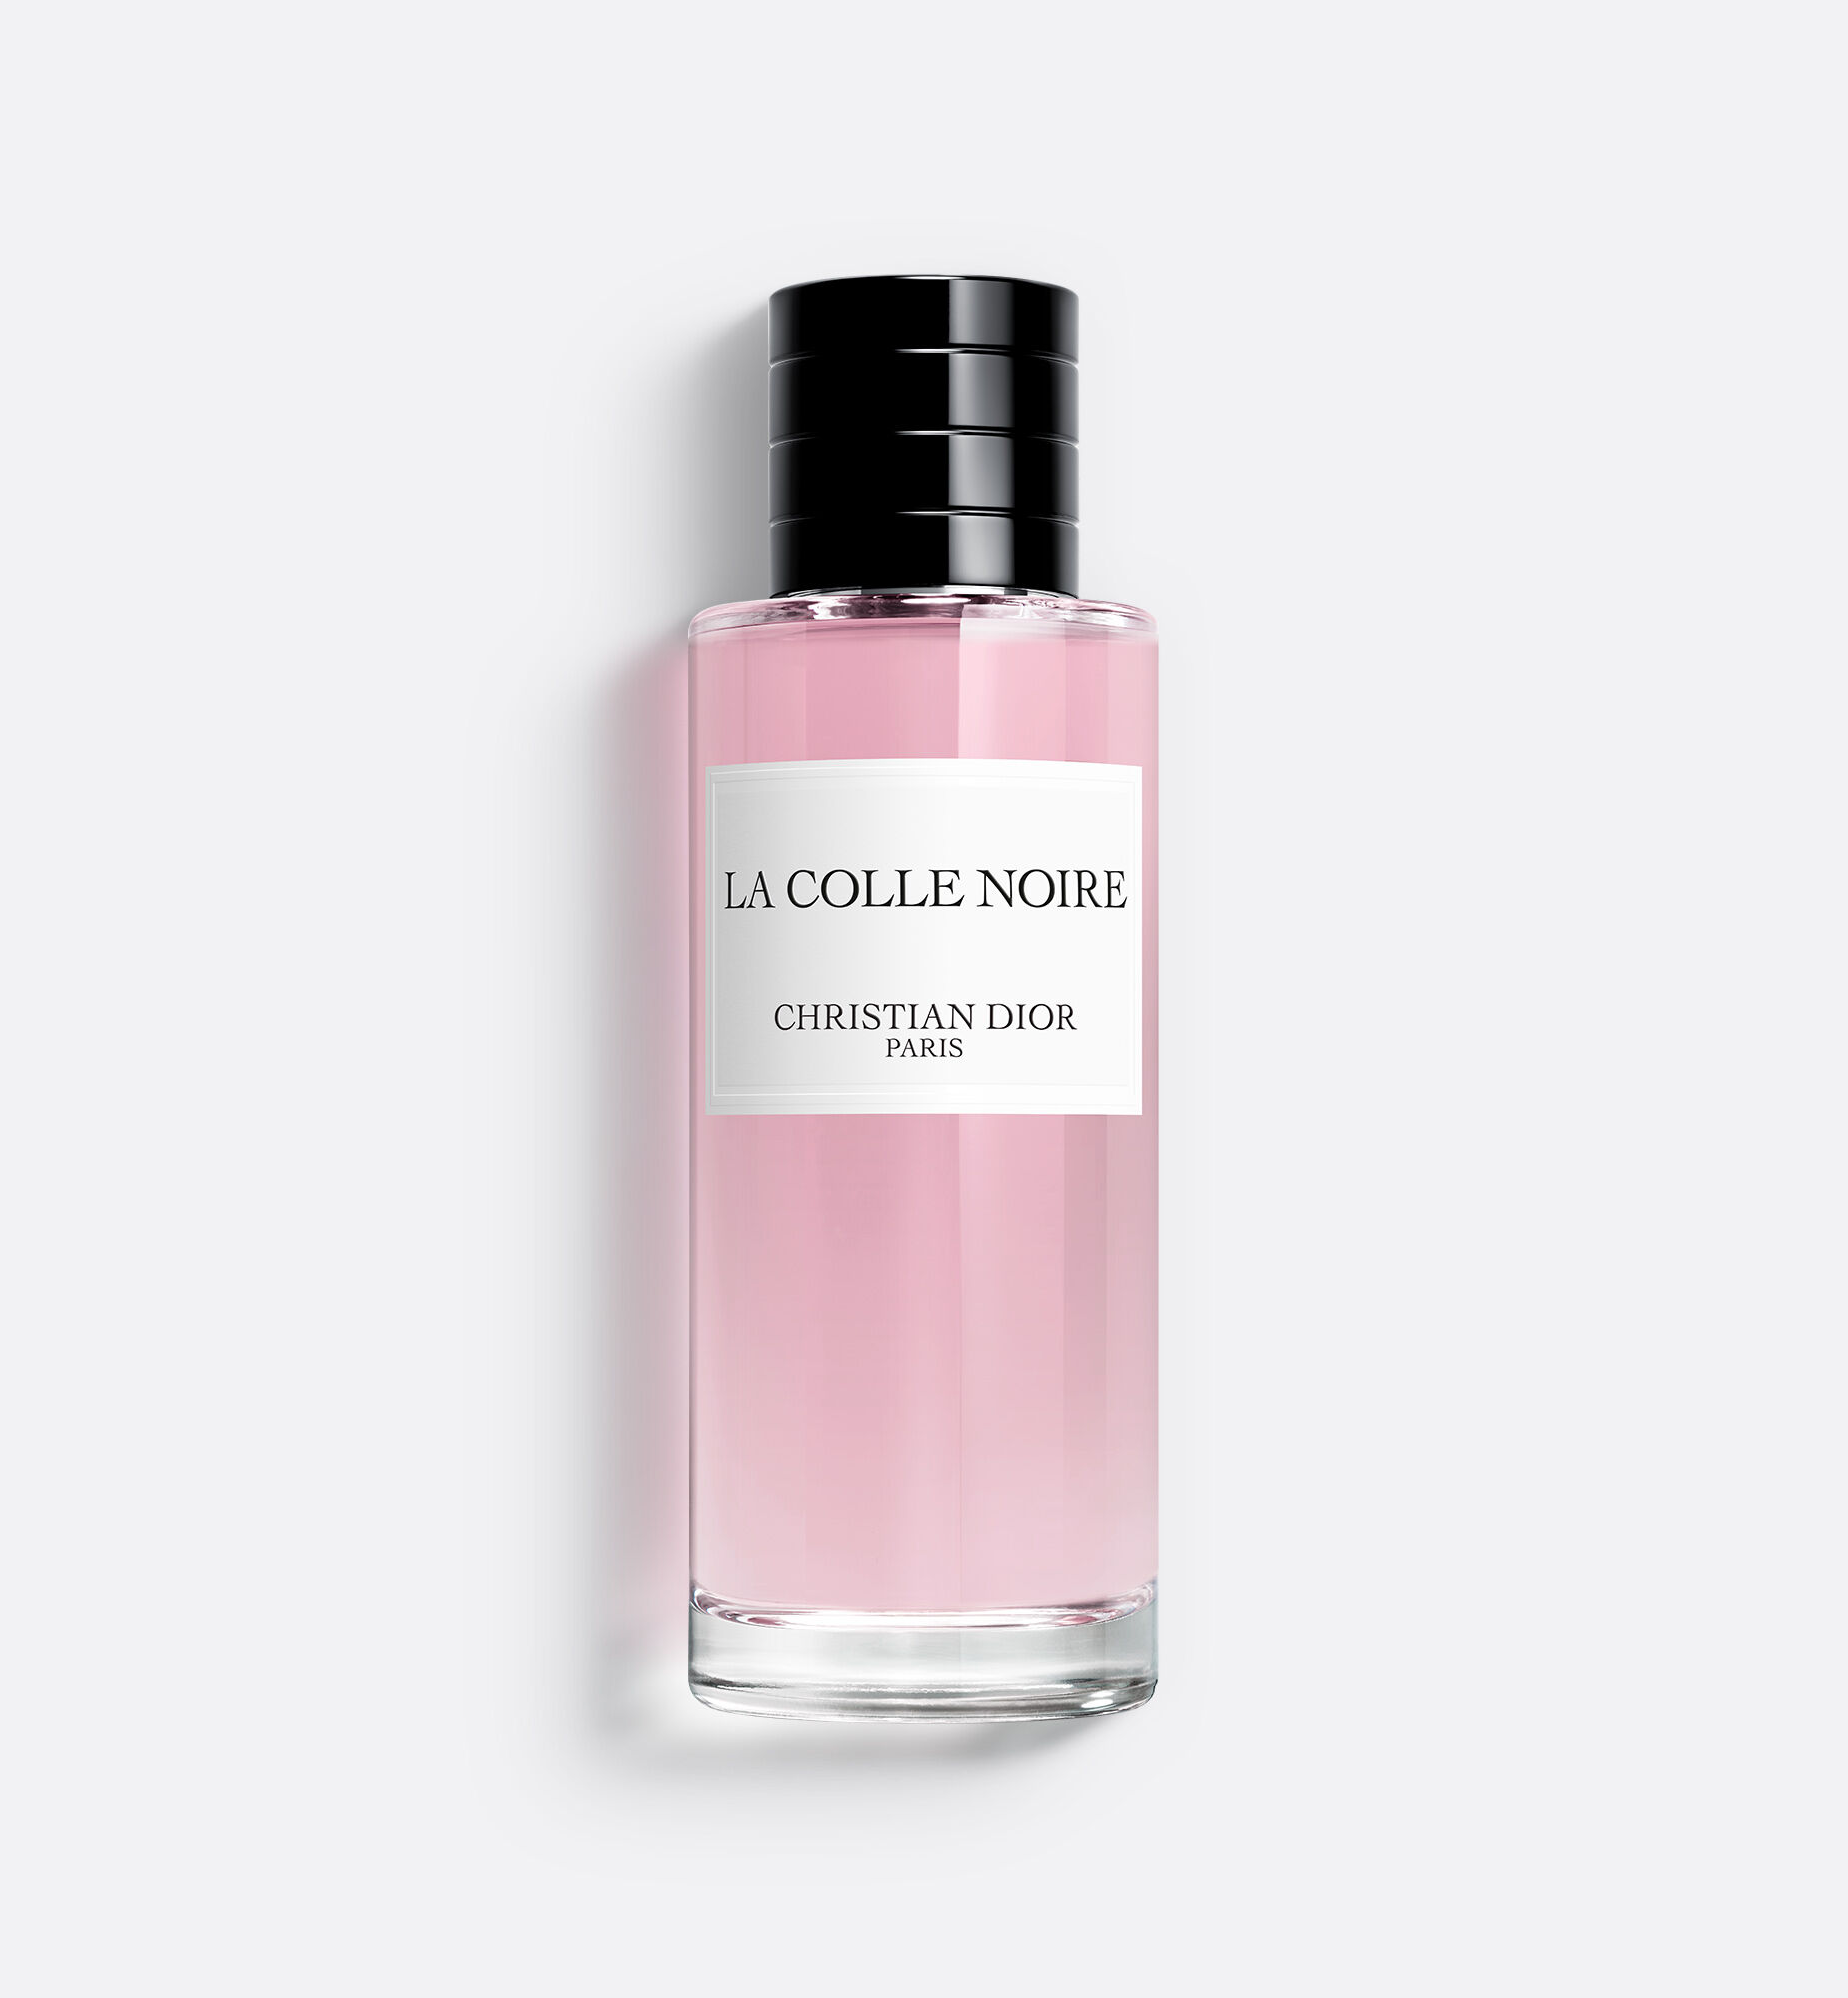 特売格安  250ml Noire Colle La Dior ラコルノワール ディオール 香水(女性用)